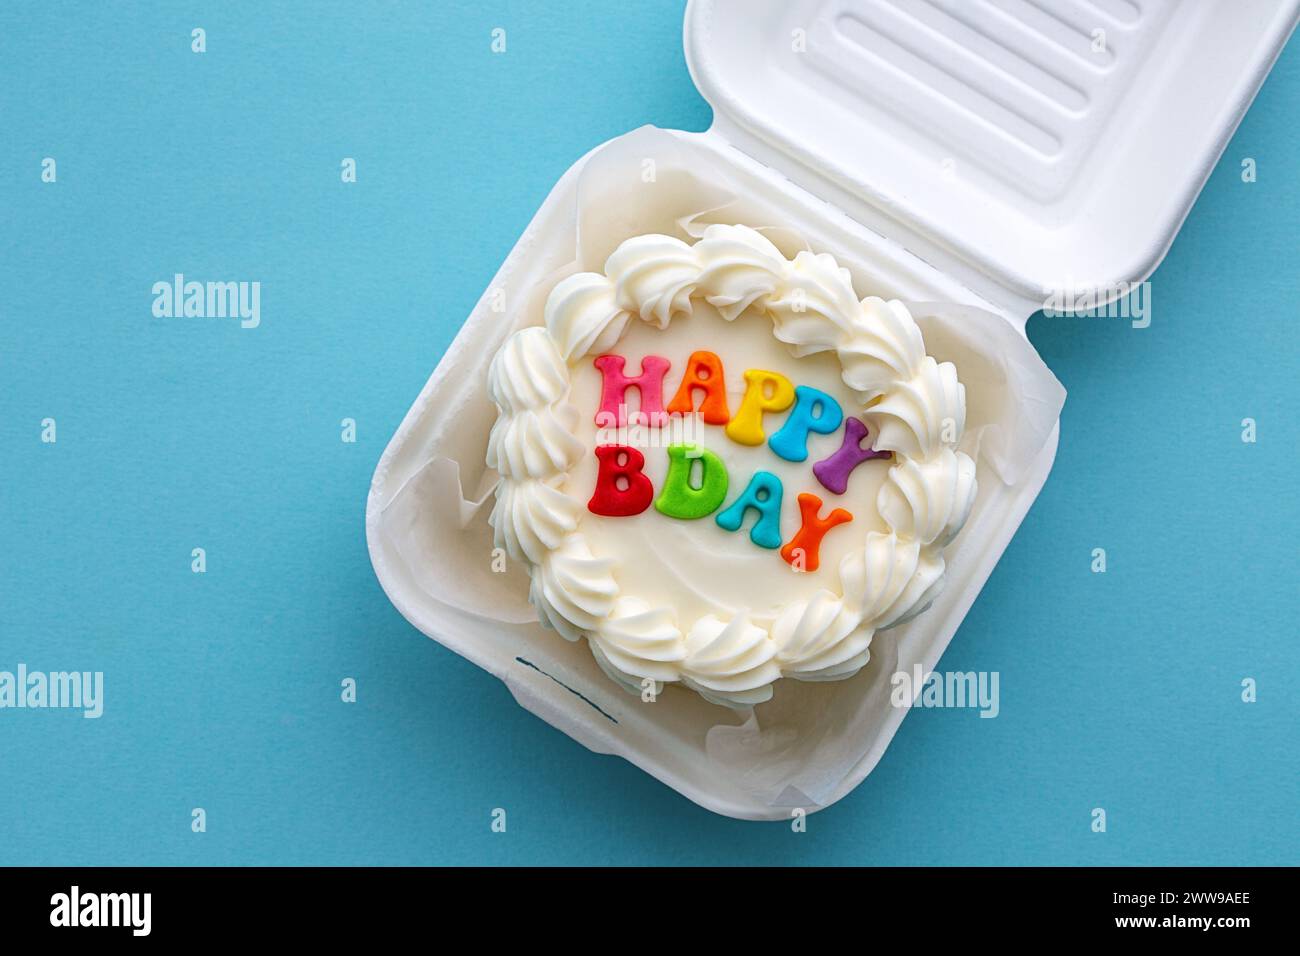 Mini gâteau d'anniversaire avec message coloré joyeux anniversaire dans une boîte à lunch en carton Banque D'Images